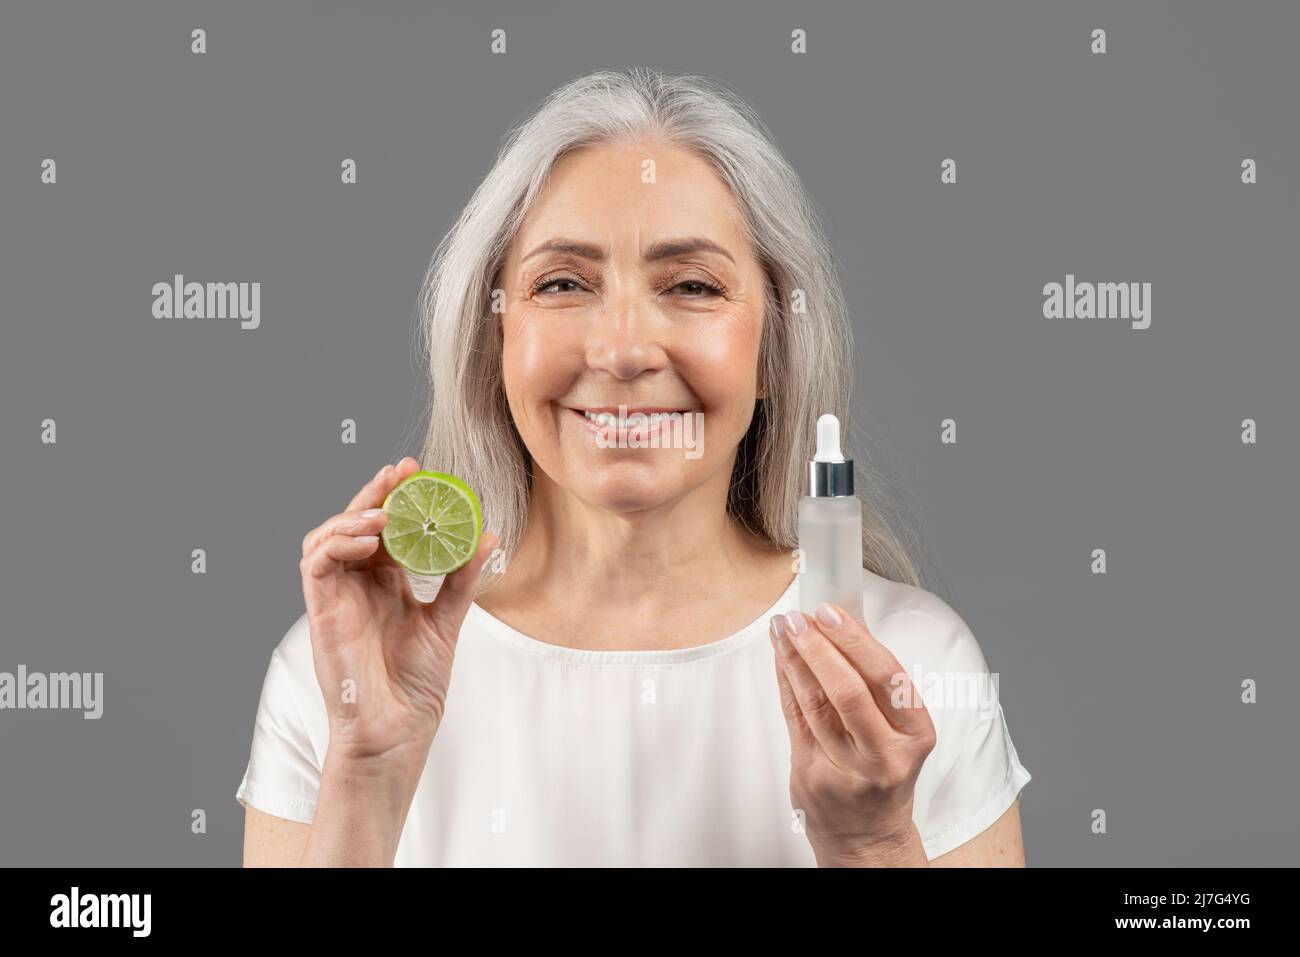 Tägliche Hautpflege. Feminine reife Frau, die für Bio-Kosmetik wirbt und Gesichtsserum mit Fruchtsäuren und Kalk zeigt Stockfoto